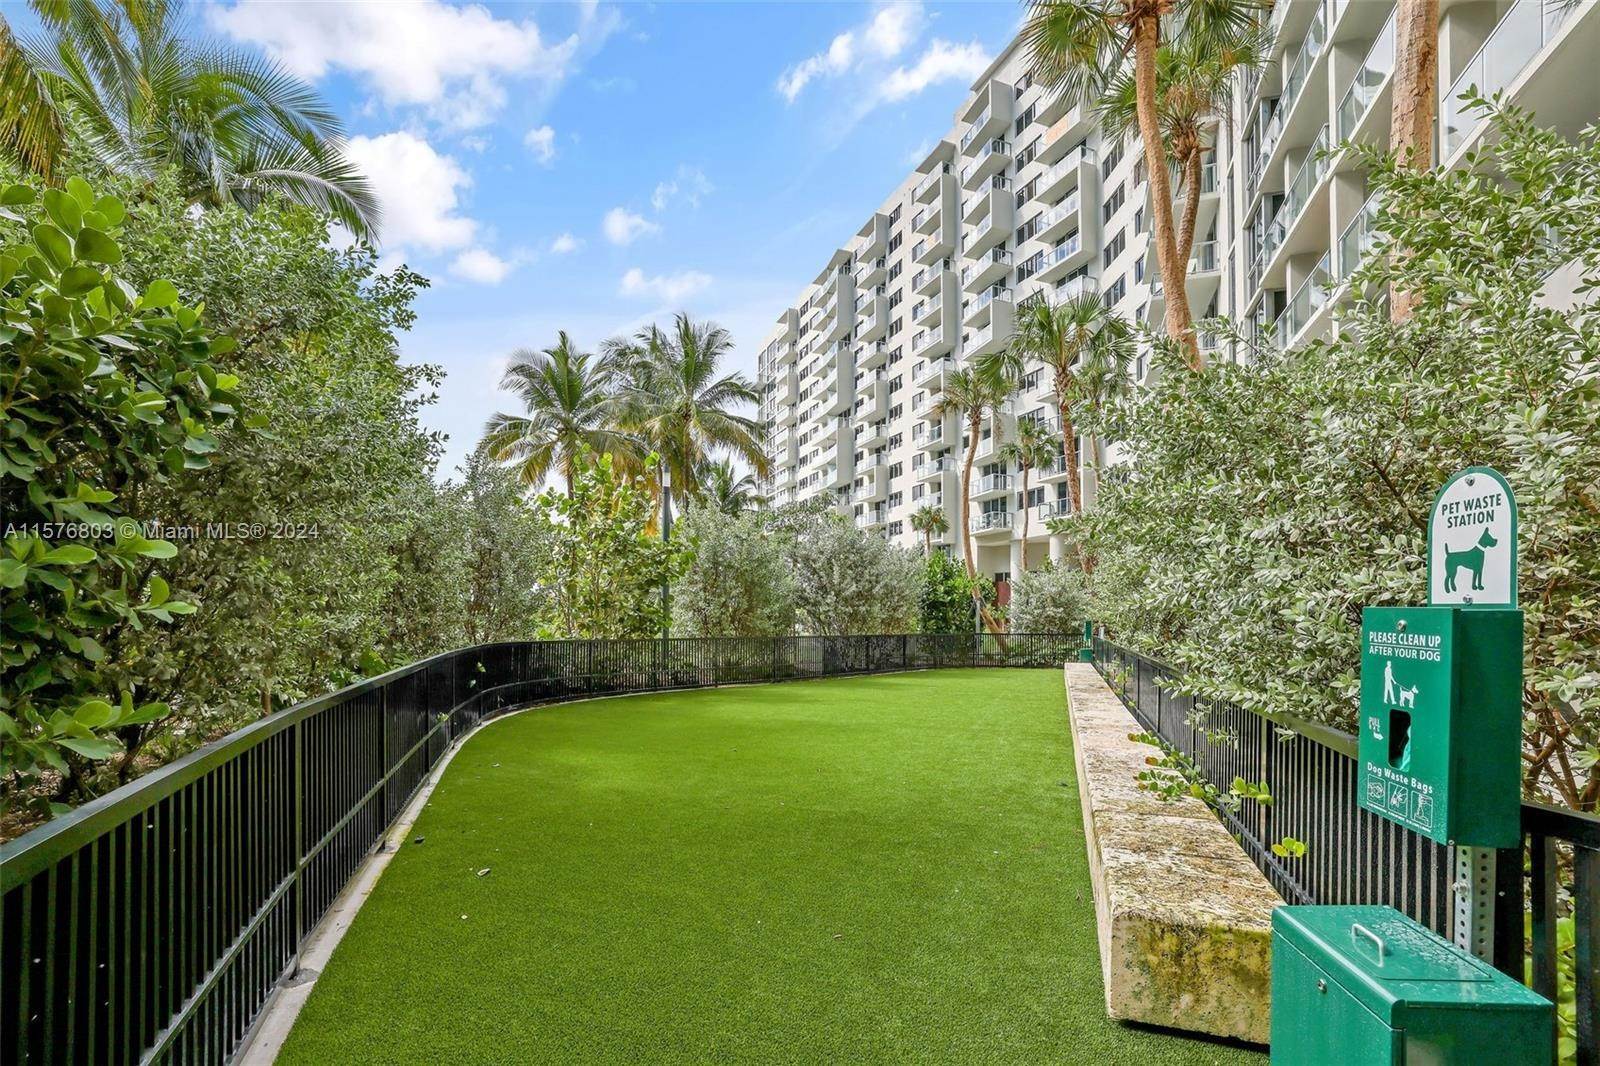 Condominium at West Avenue, Miami Beach, FL 33139